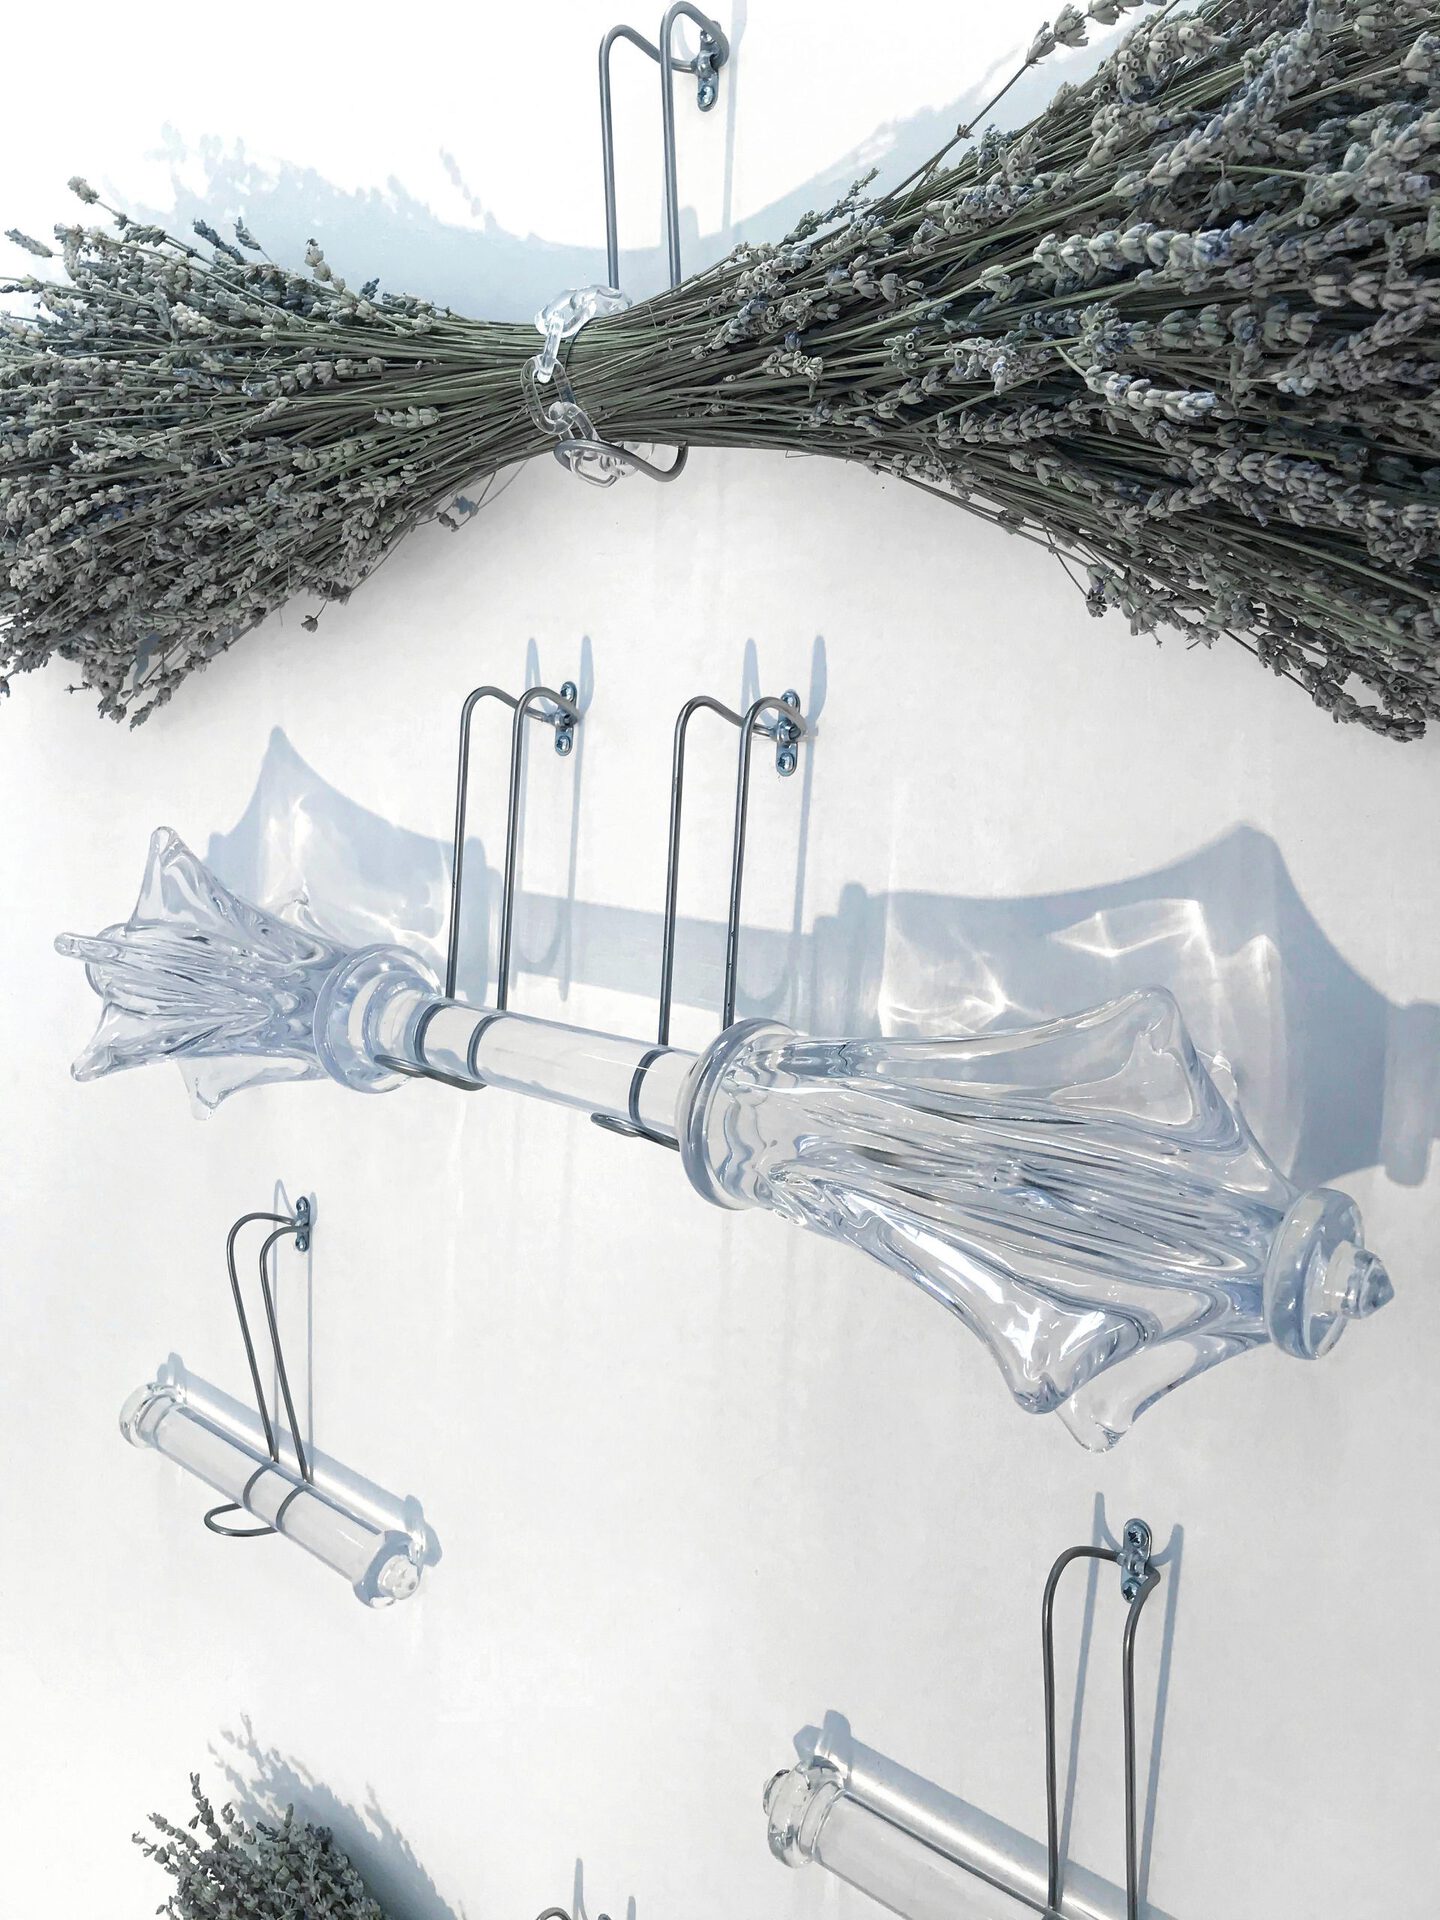 Floryan Varennes, Panoplie (details), 2020,  Medical flesh retractors, lavender aspic (Lavendula latifolia), glass dumbbell, glass tubes, acrylic chains, 190 x 150 cm